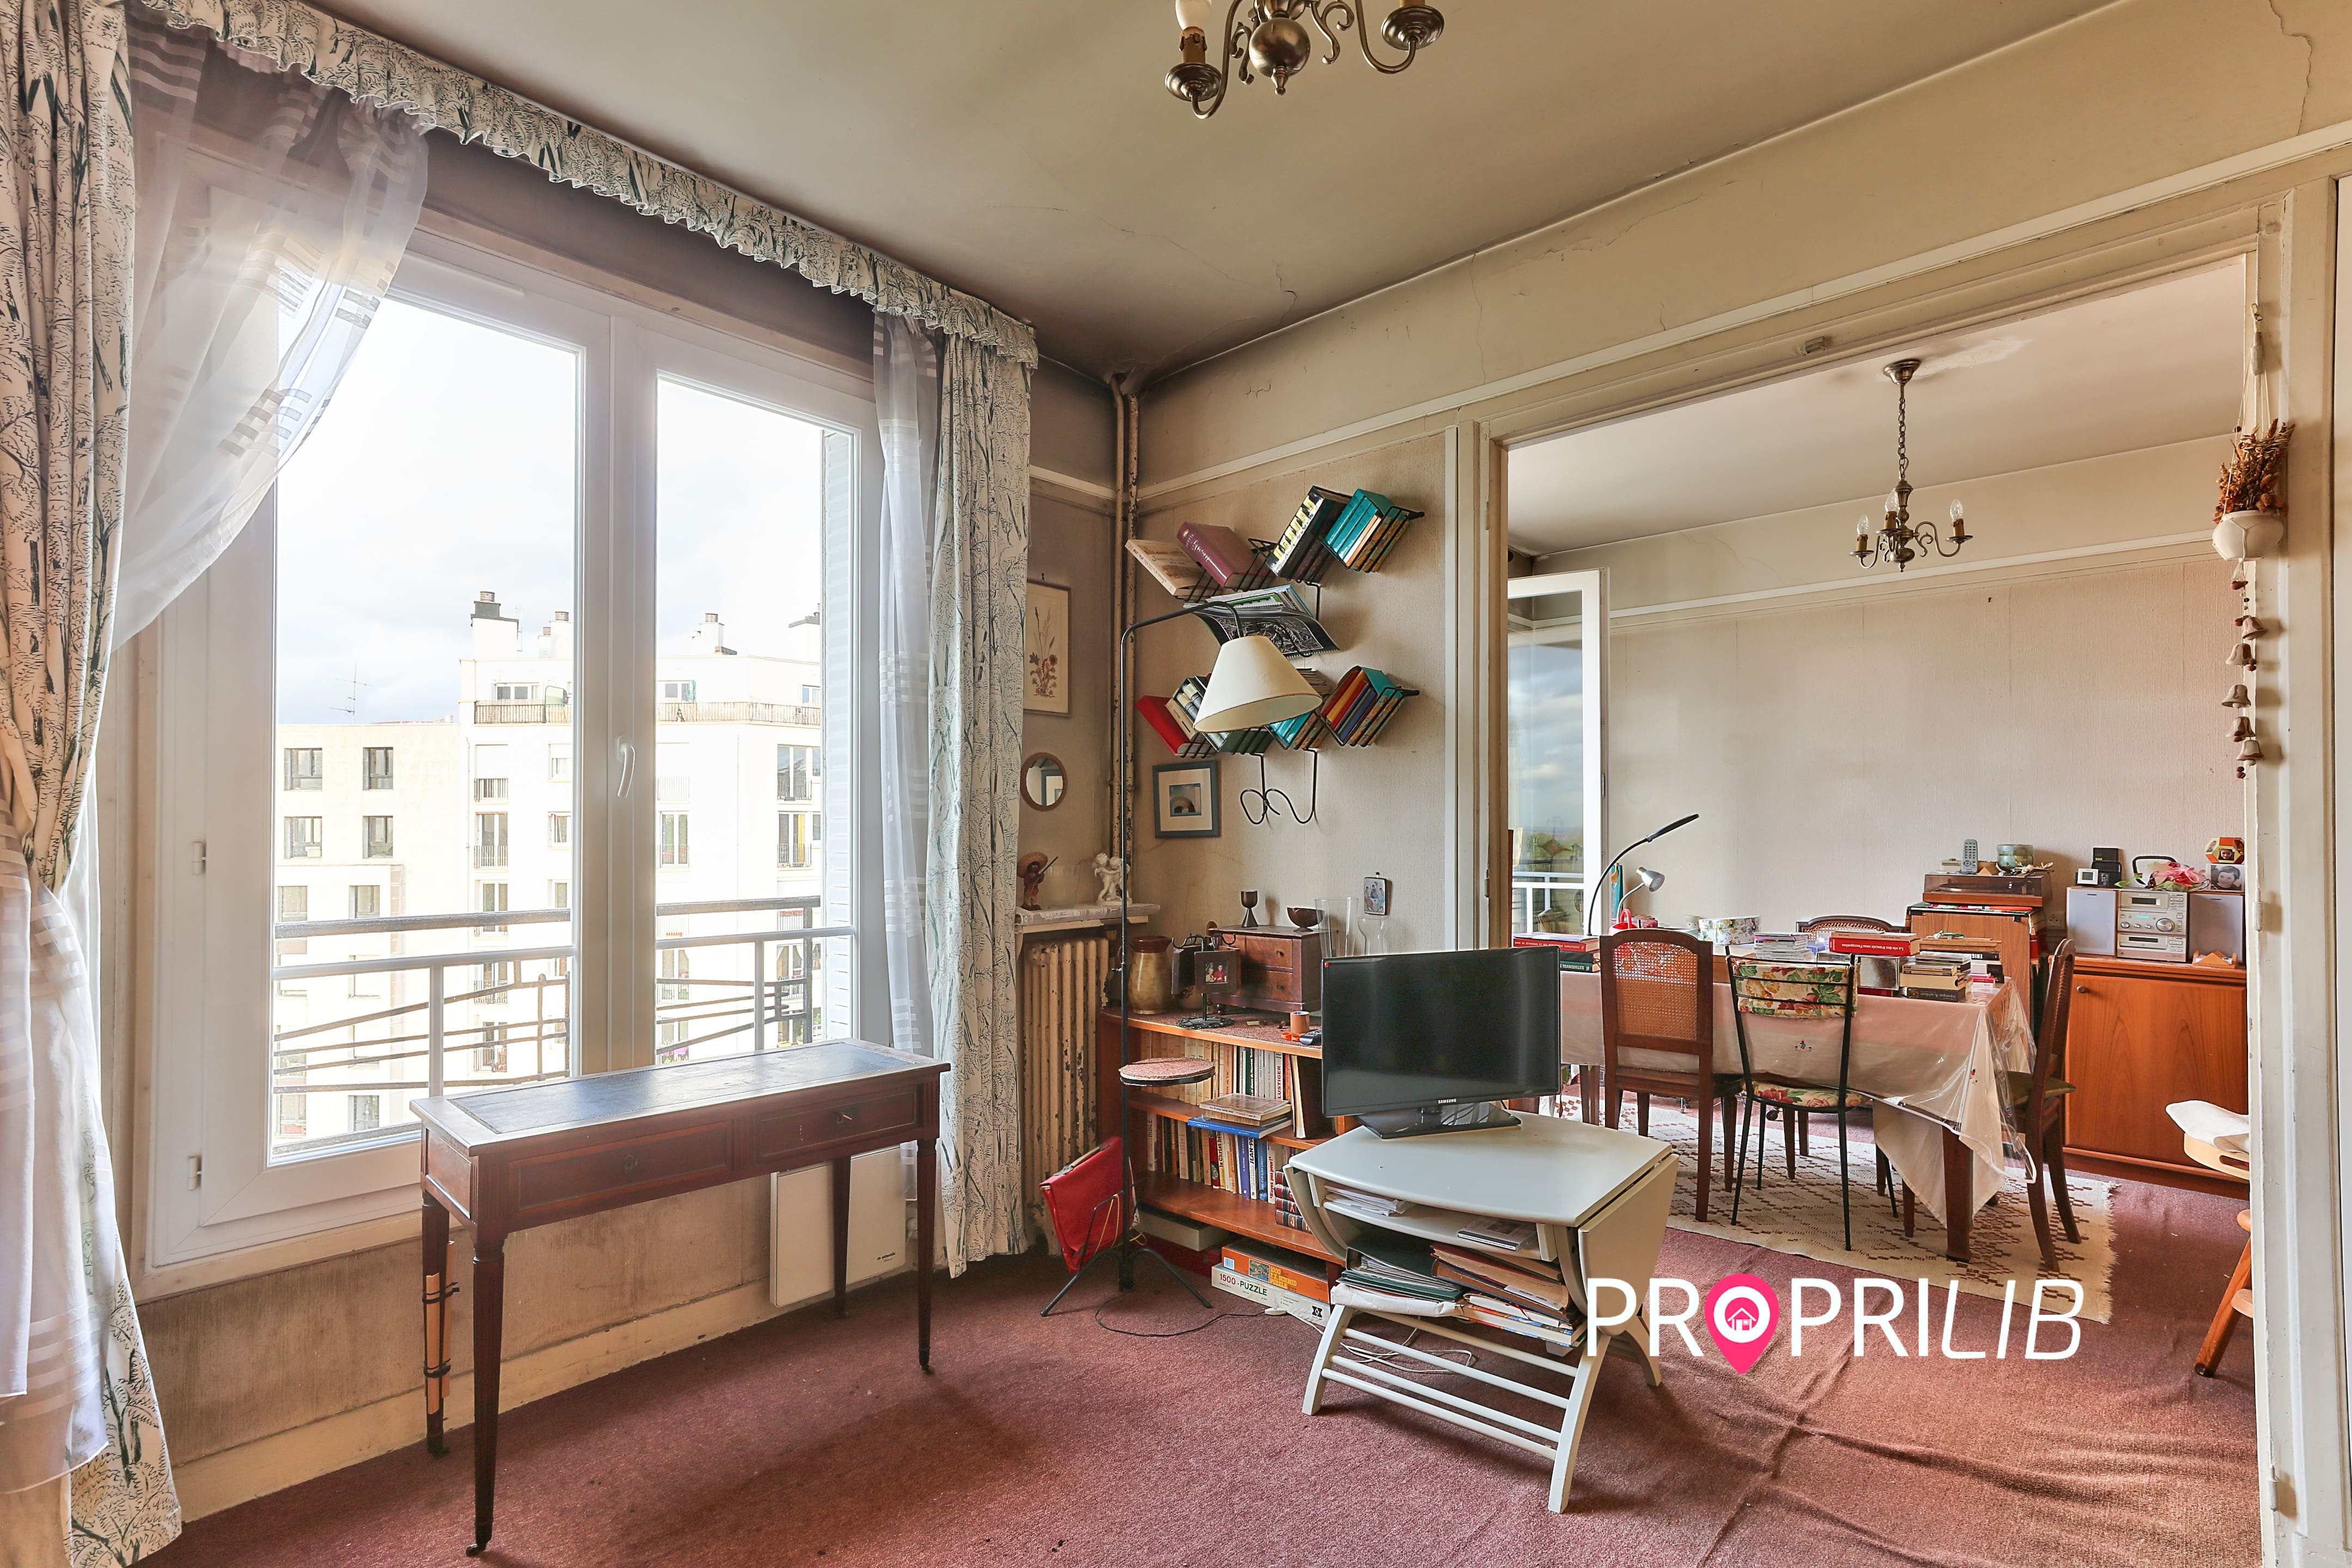 PropriLib l’agence immobilière en ligne à prix fixe vend cet appartement à Paris 19 ème